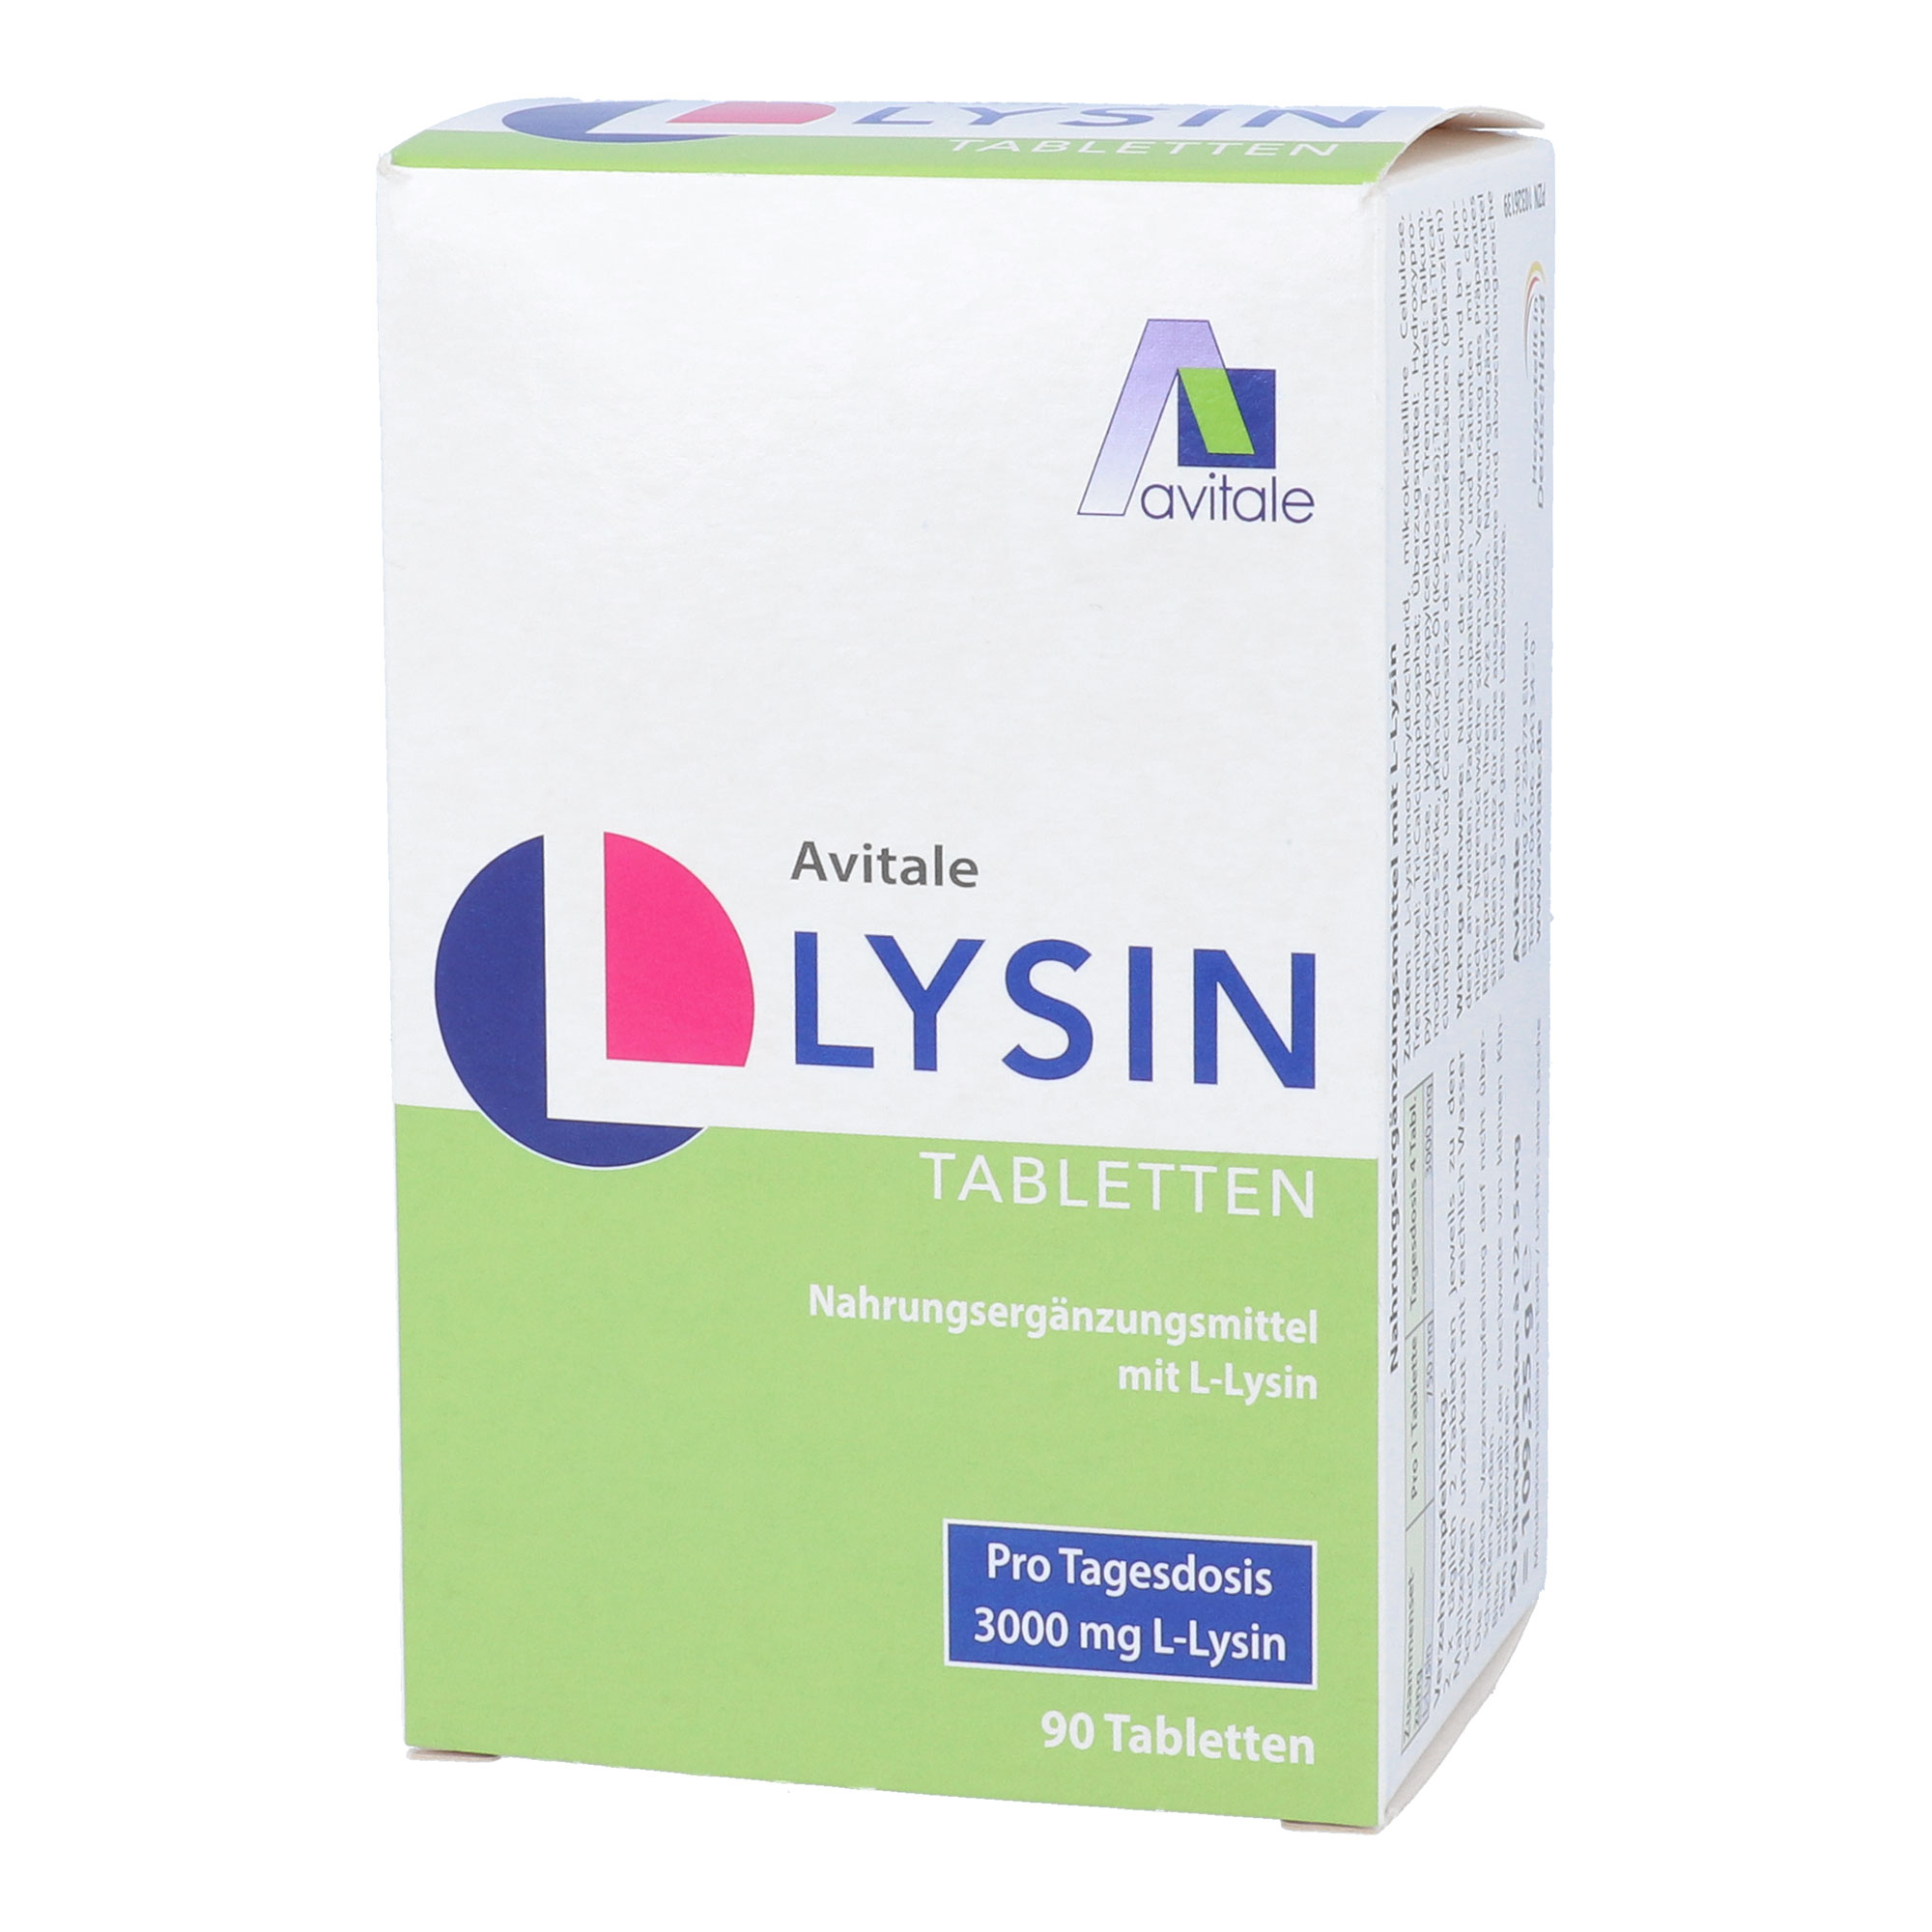 Nahrungsergänzungsmittel mit L-Lysin.